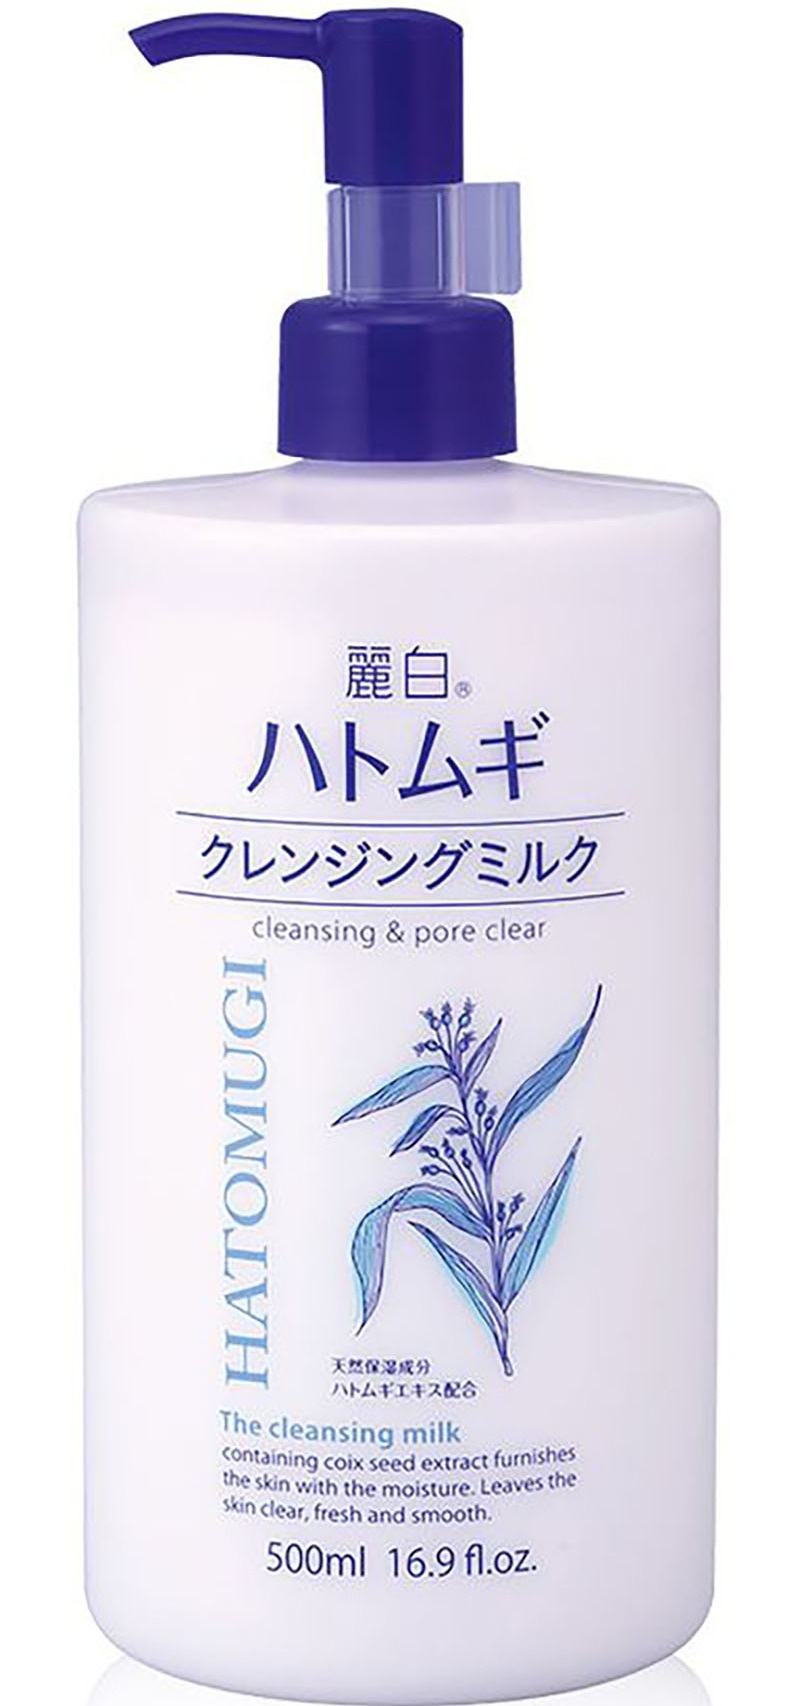 REIHAKU Hatomugi Cleansing & Pore Cleansing Milk